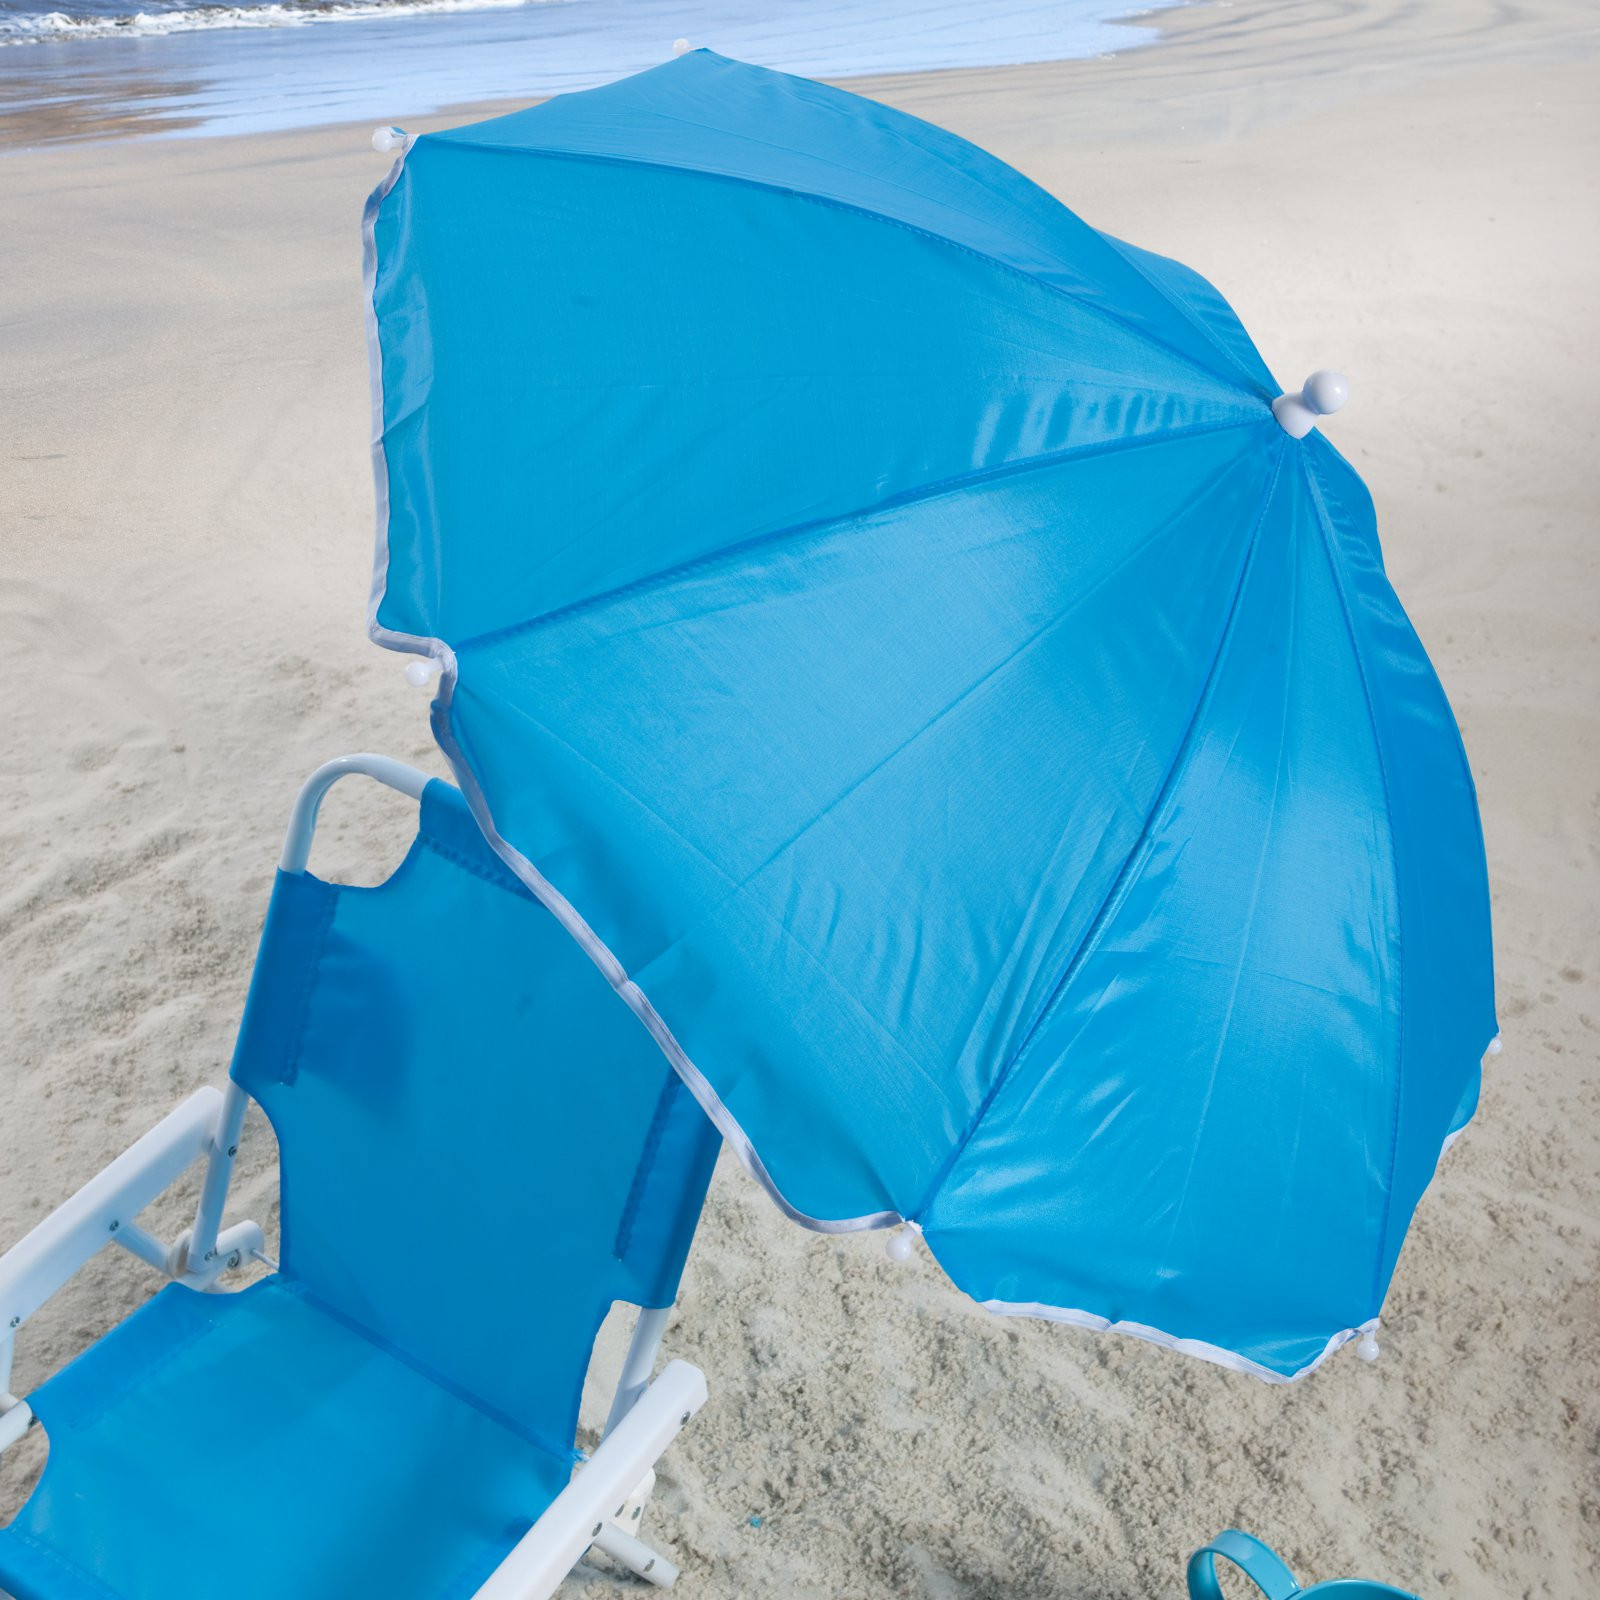 Kids Beach Chair With Umbrella
 Kids Beach Chair & Umbrella